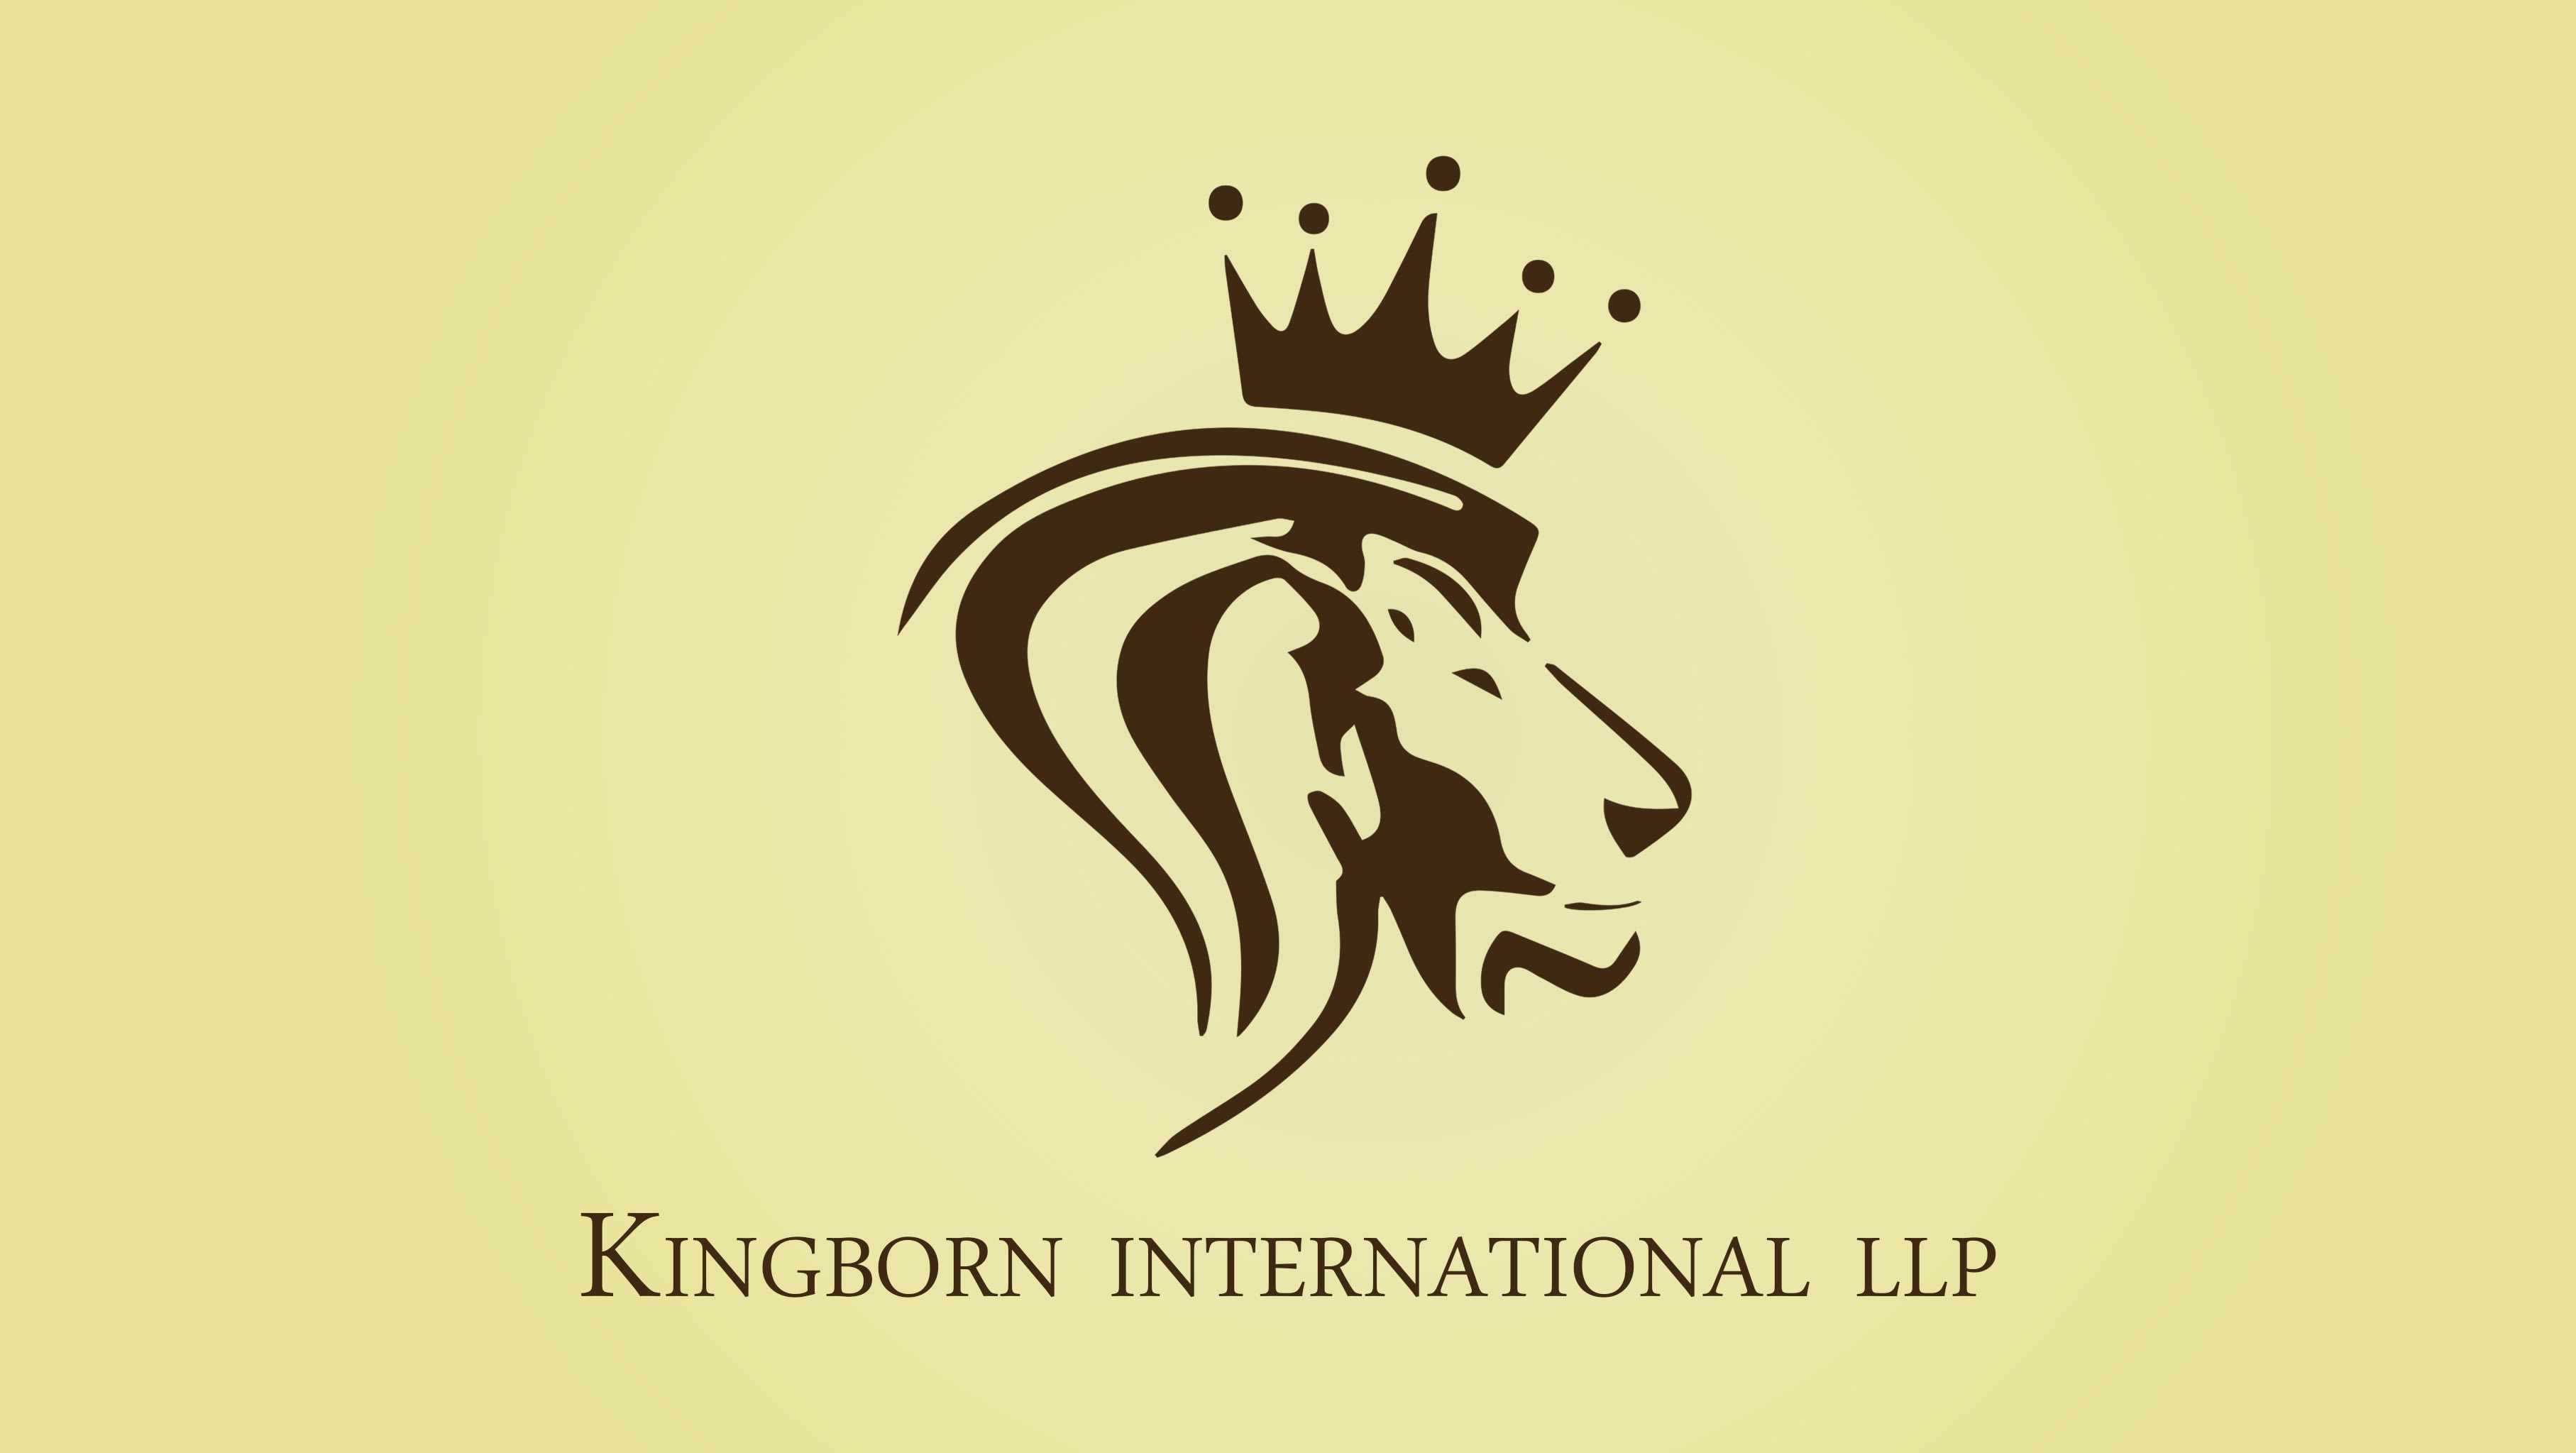 Kingborn International LLP